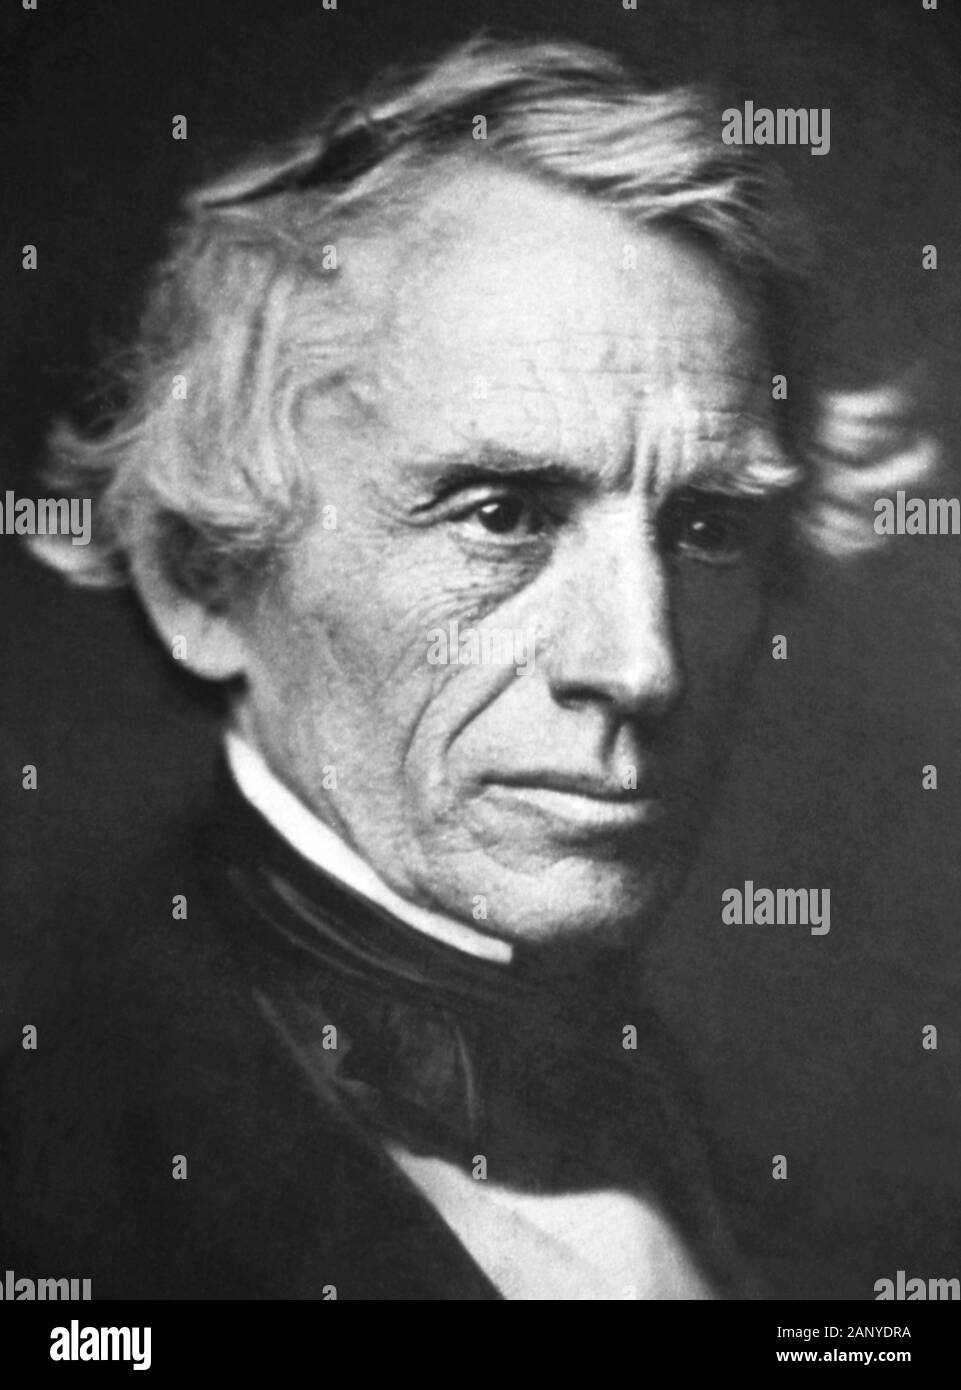 Ritratto d'epoca foto del pittore e inventore americano Samuel F B Morse (1791 – 1872) – pioniere nello sviluppo del telegrafo elettrico e co-creatore di Morse Code. Daguerreotype foto circa 1845. Foto Stock